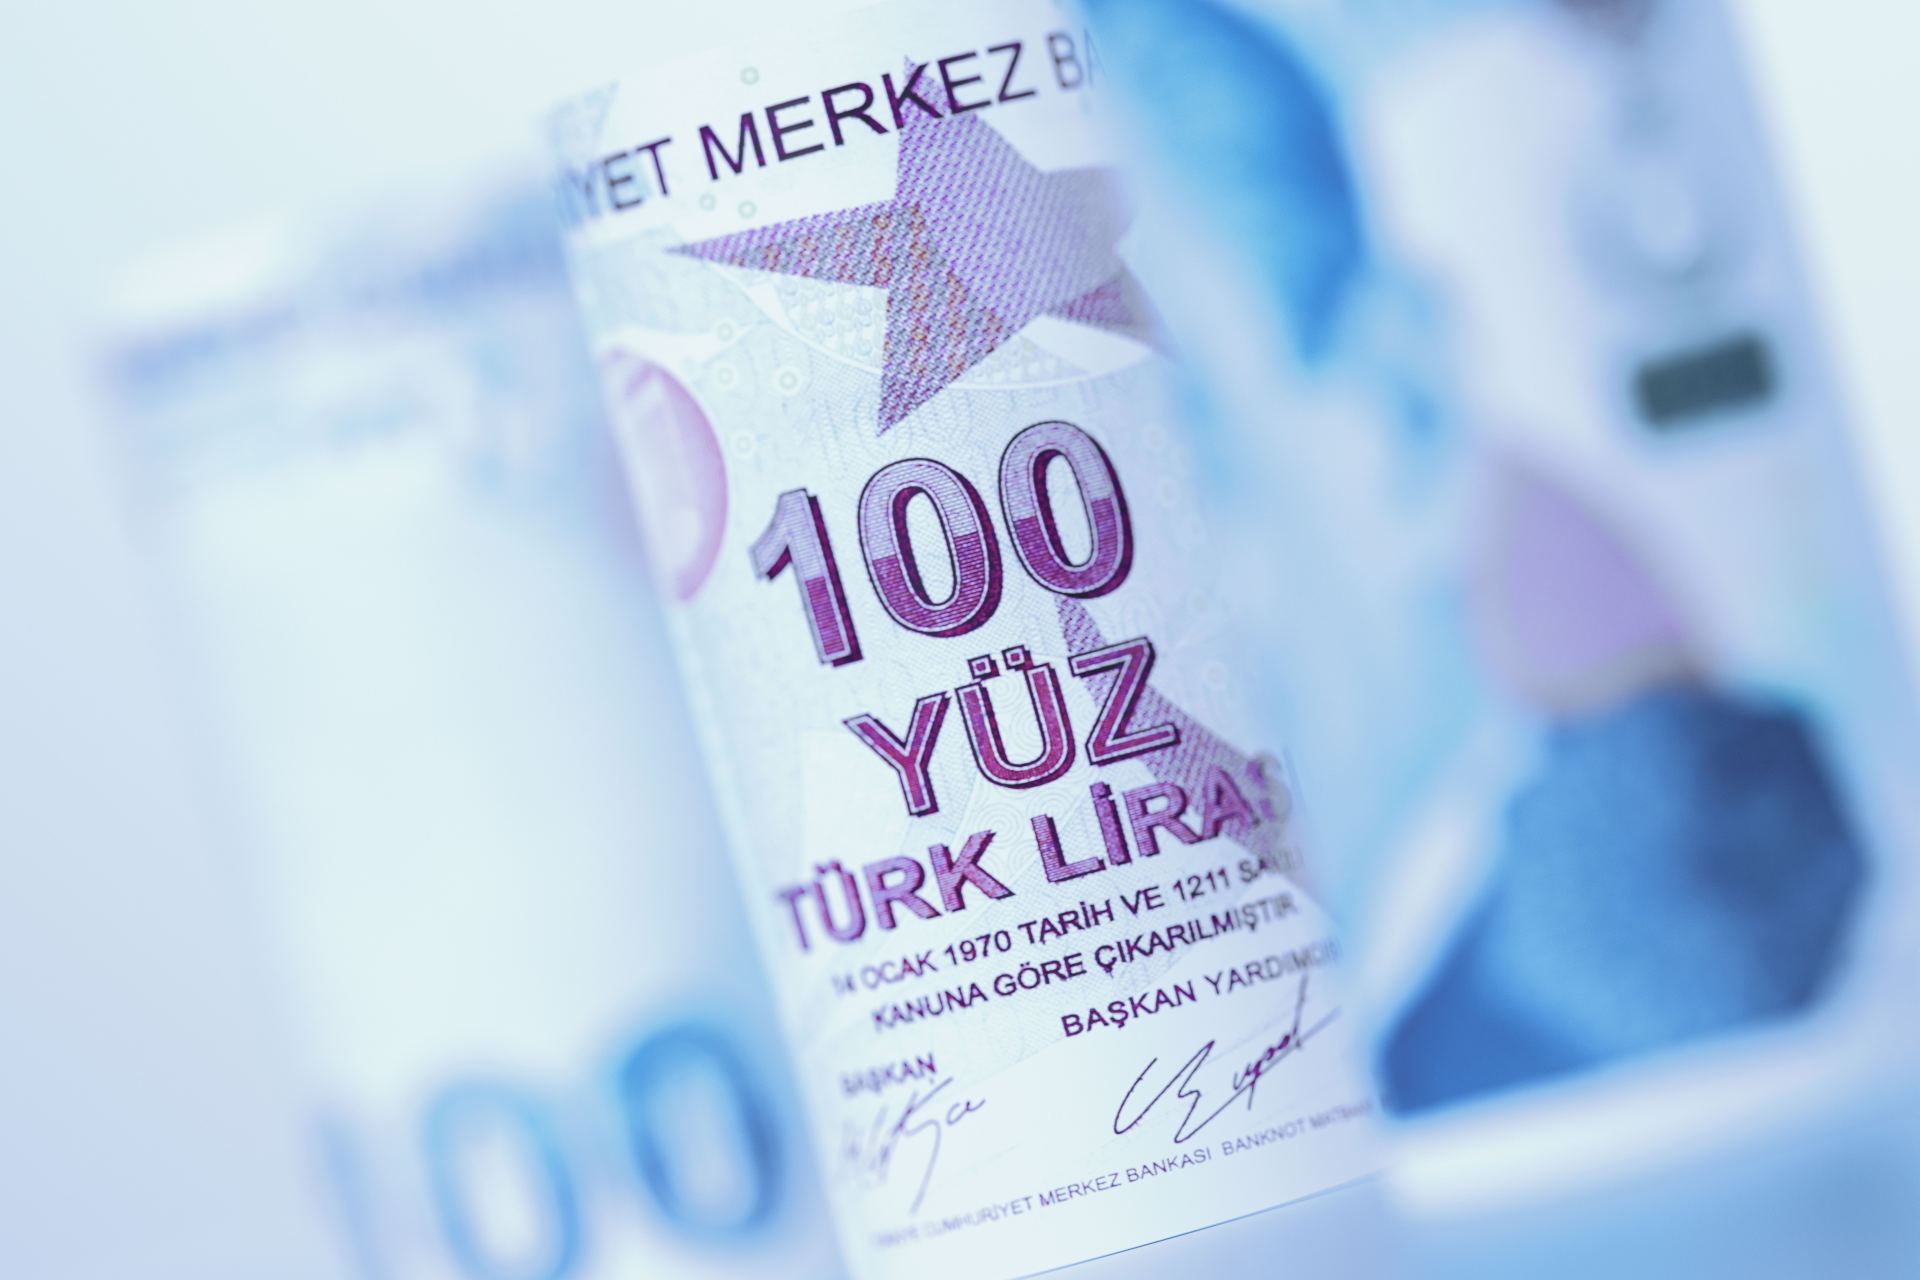  Turecko hospodářství finance sazby 